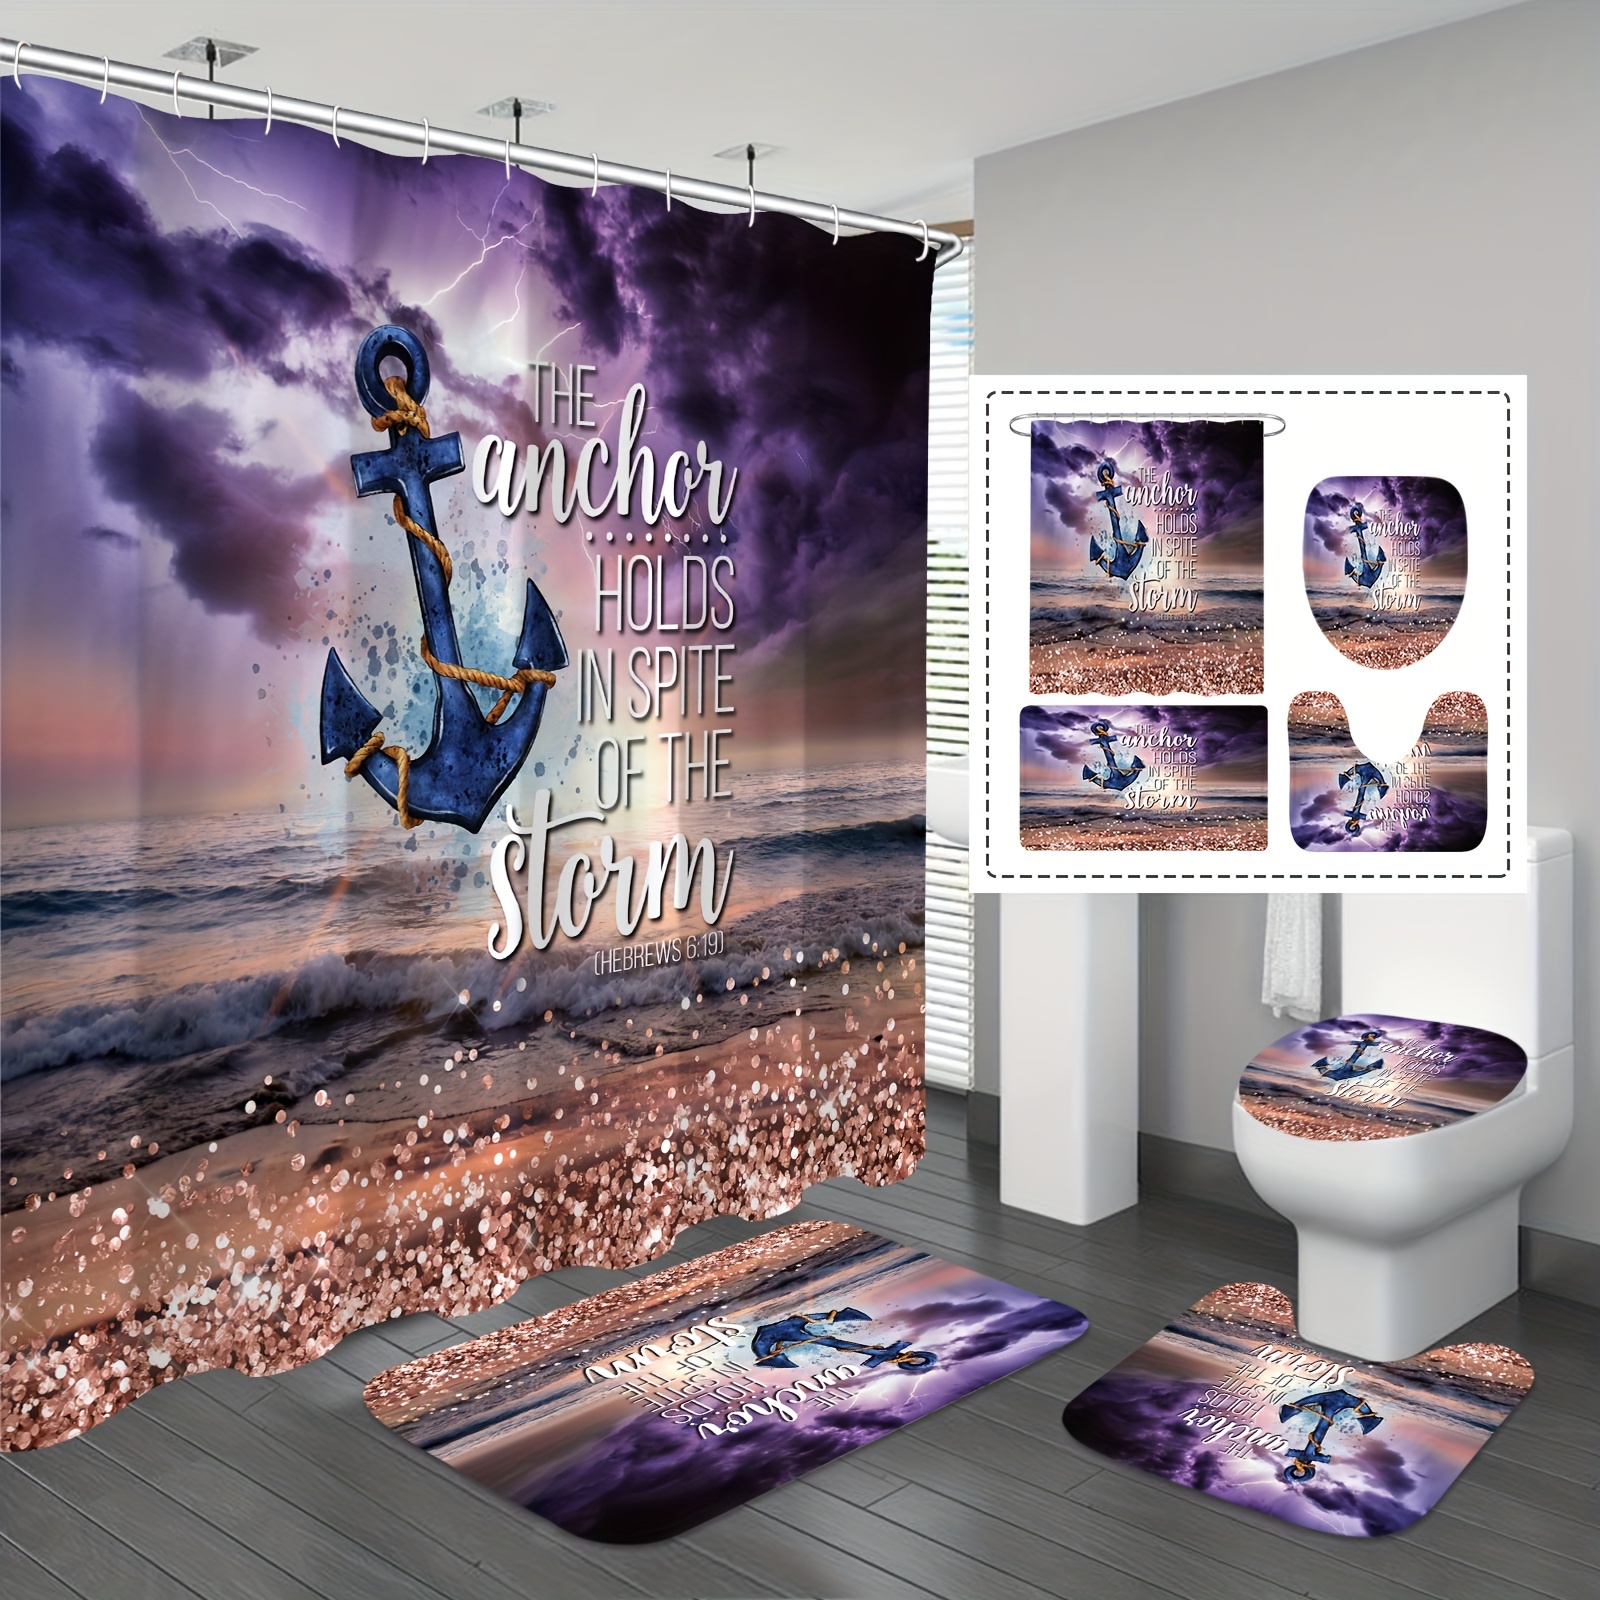 Cortina de ducha para baño, tela de anclaje azul marino con cuerdas, juego  de cortinas de ducha con 12 ganchos, lavable a máquina, impermeable